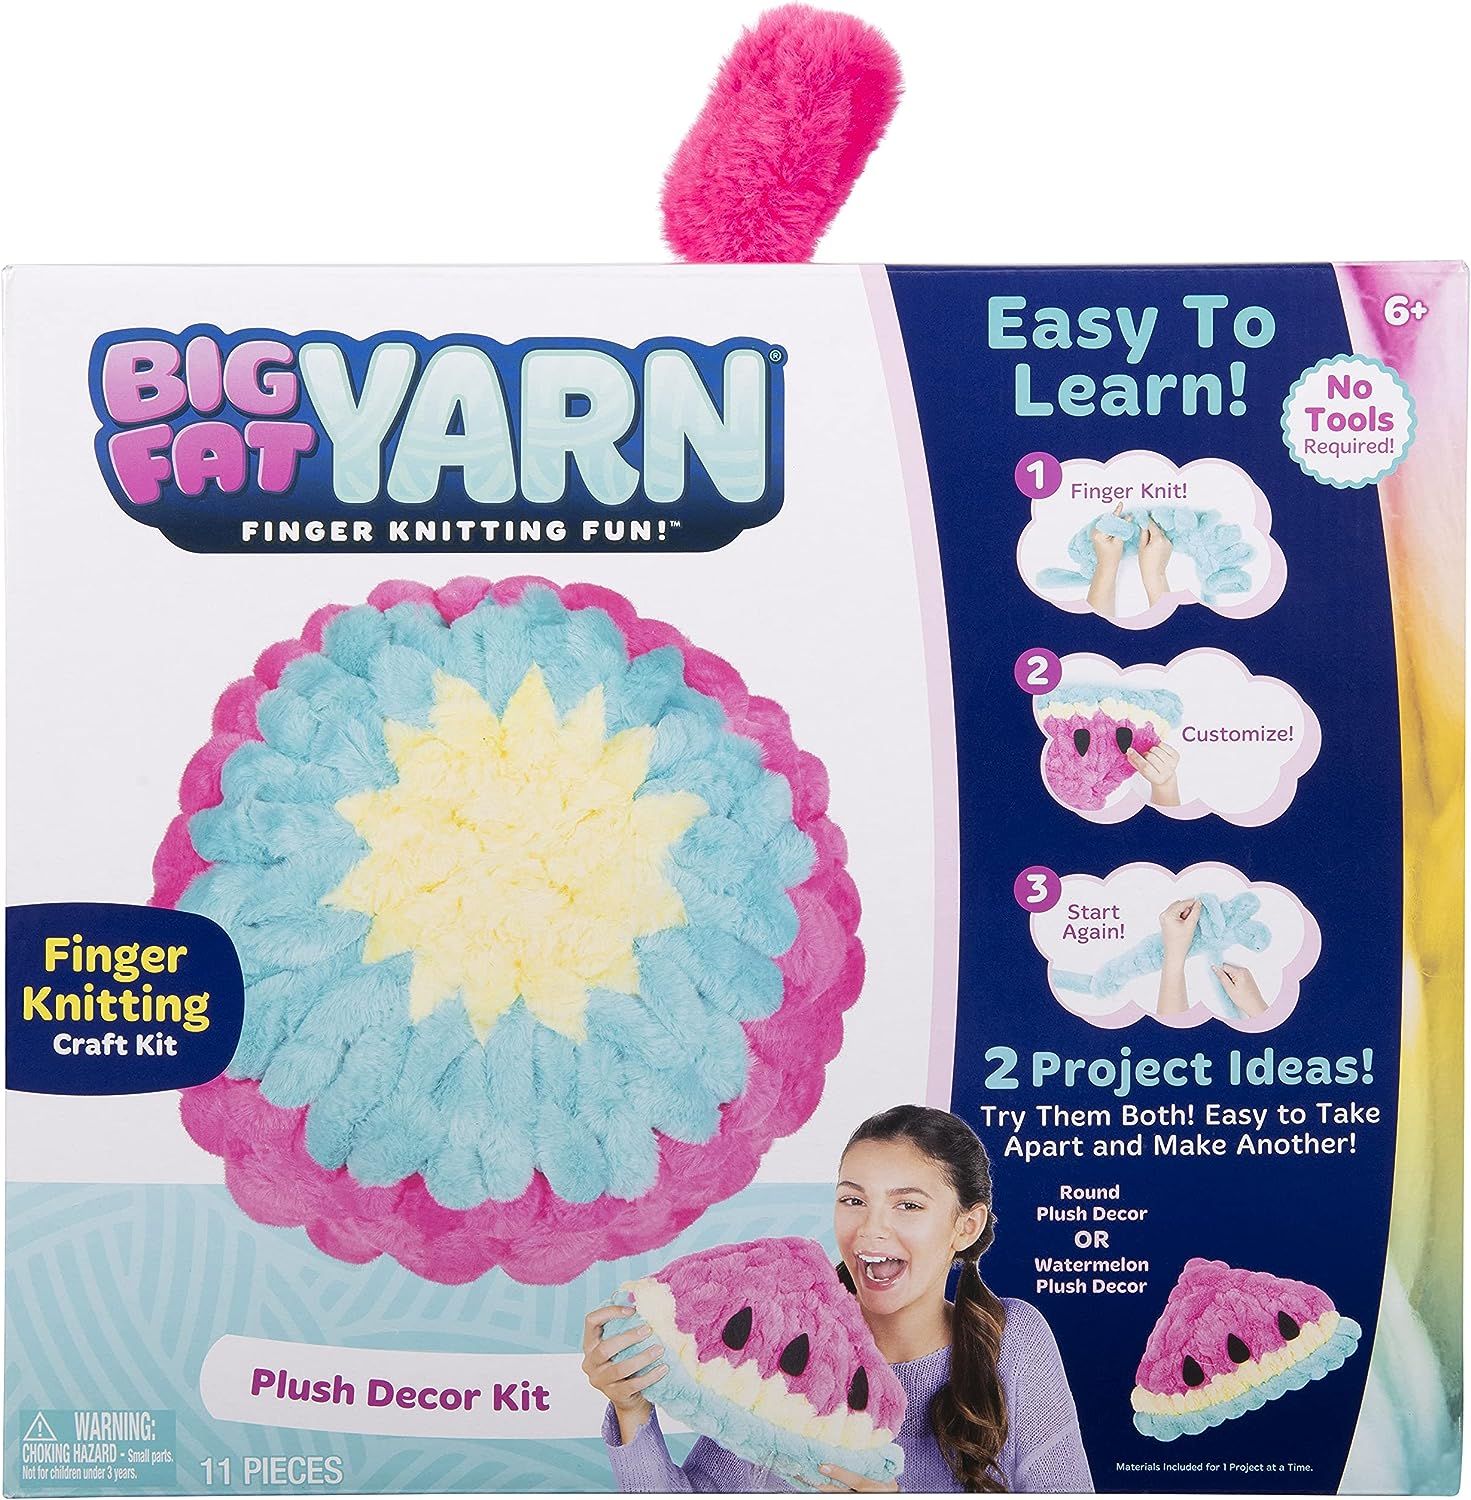 Big Fat Yarn Plush Decor Kit - Finger Knitting Fun - DIY All in One Finger Knitting Kit - Level 2... | Amazon (US)